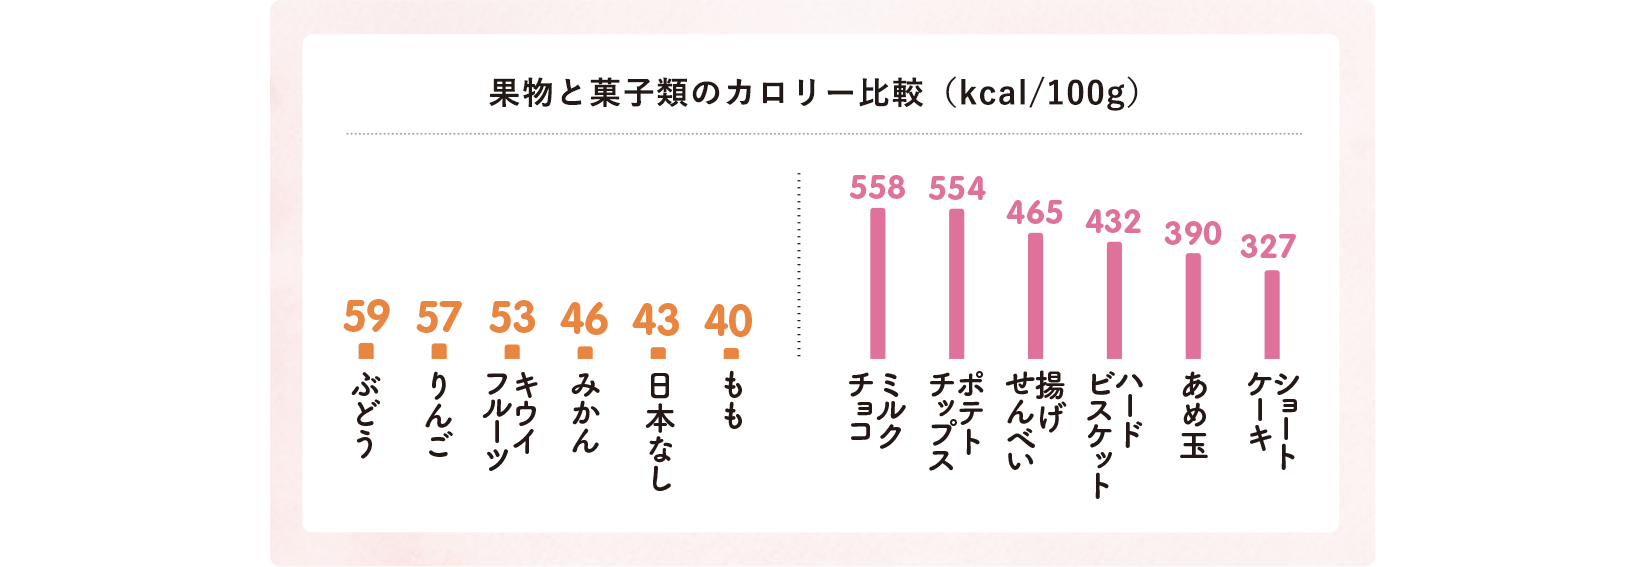 果物と菓子類のカロリー比較（kcal/100g）